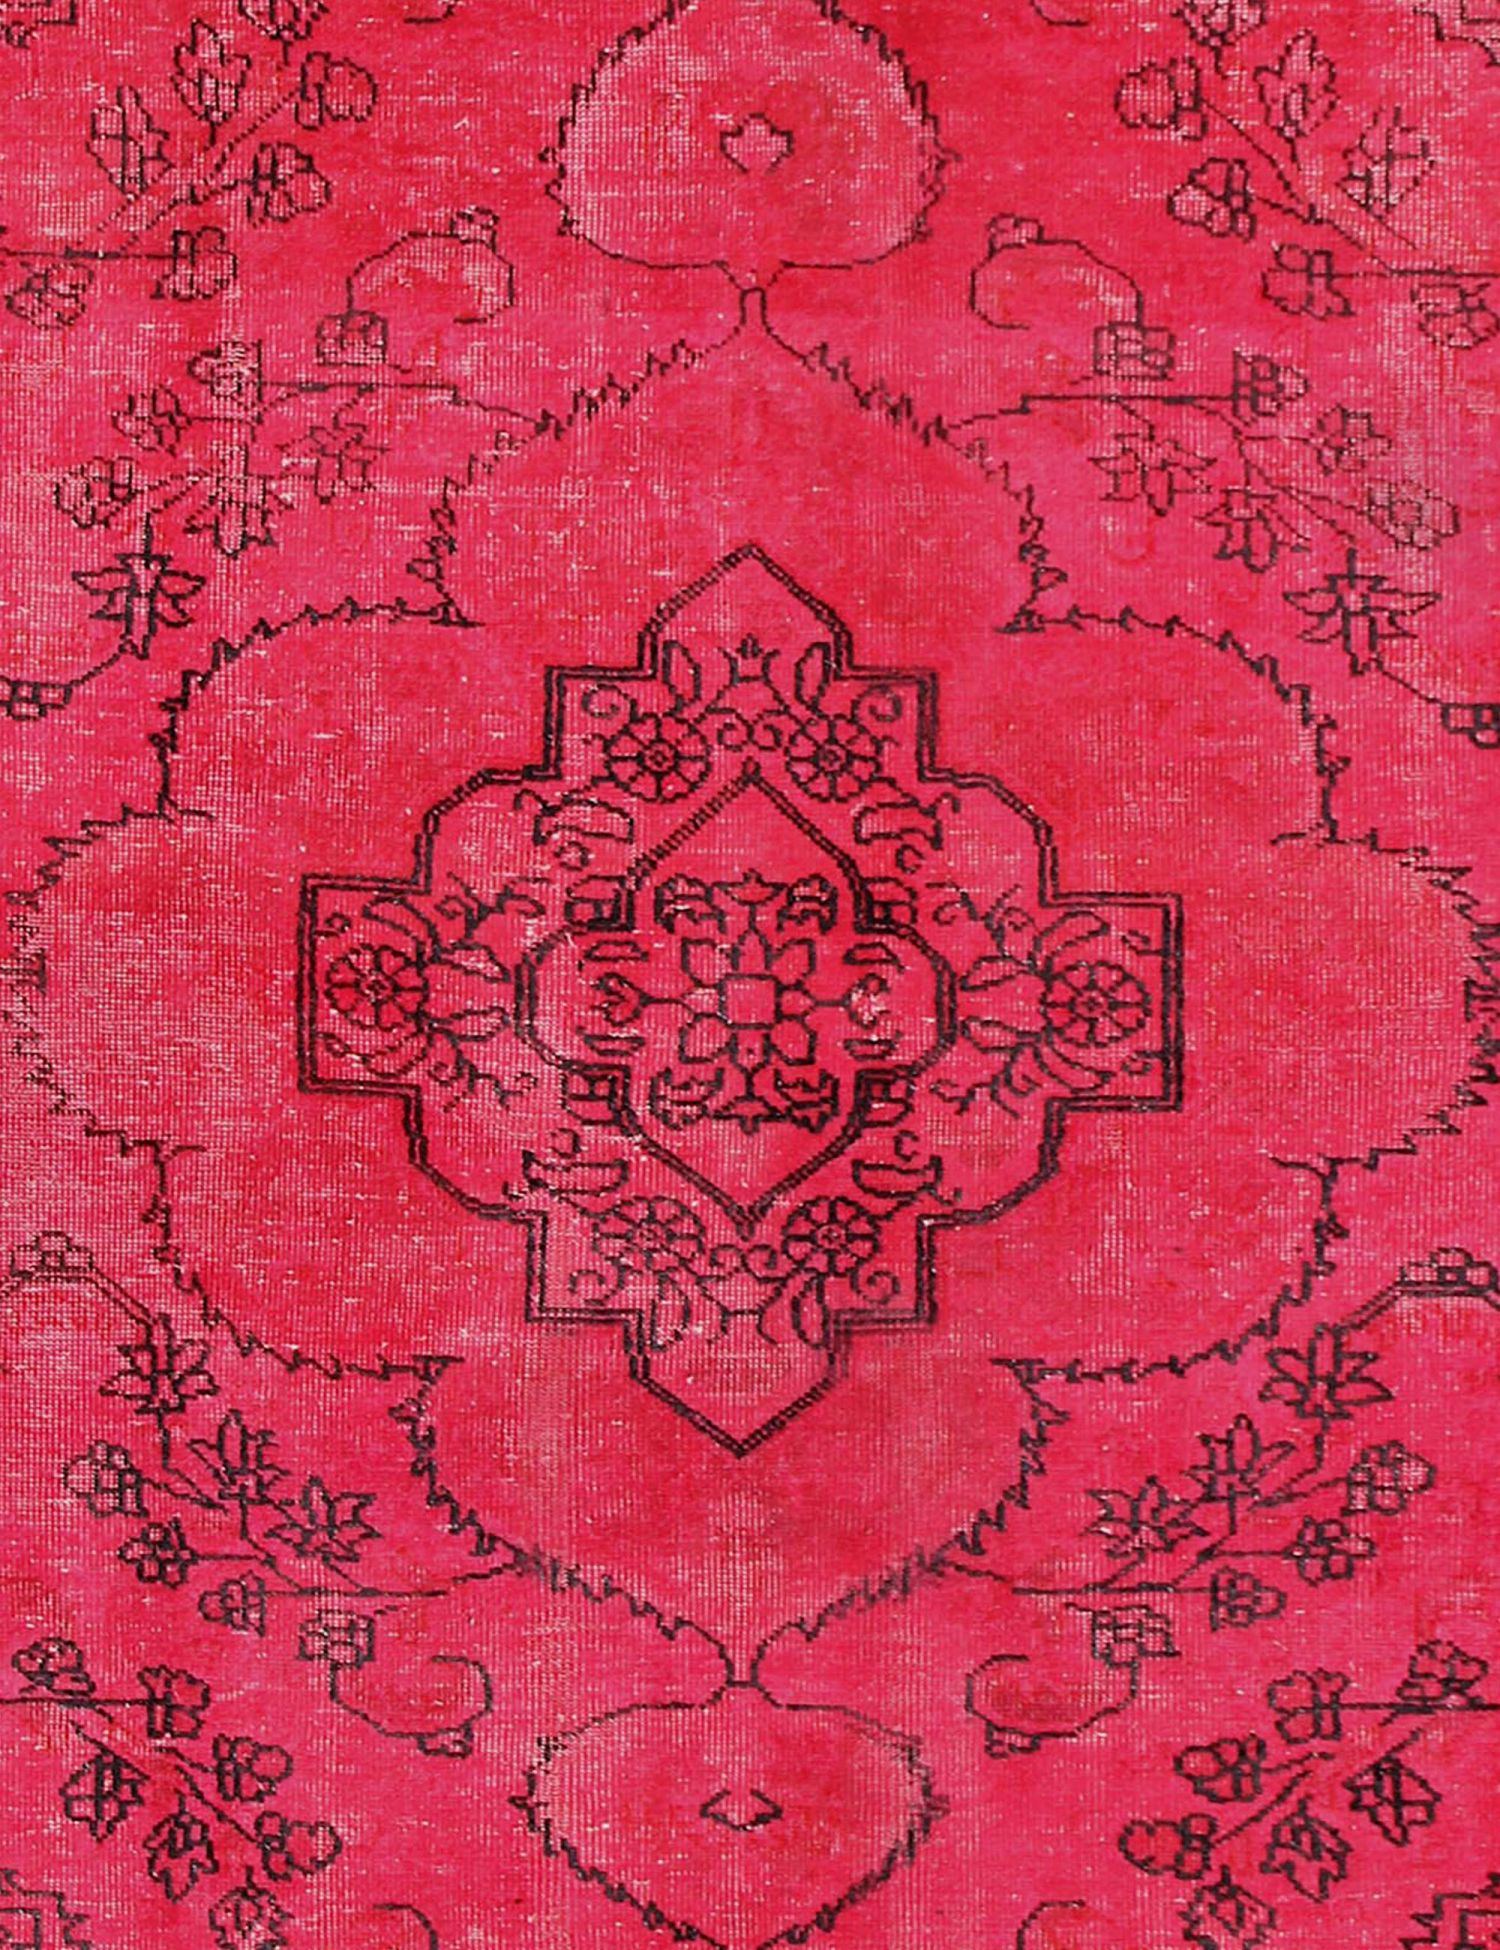 Persisk vintagetæppe  rød <br/>250 x 164 cm